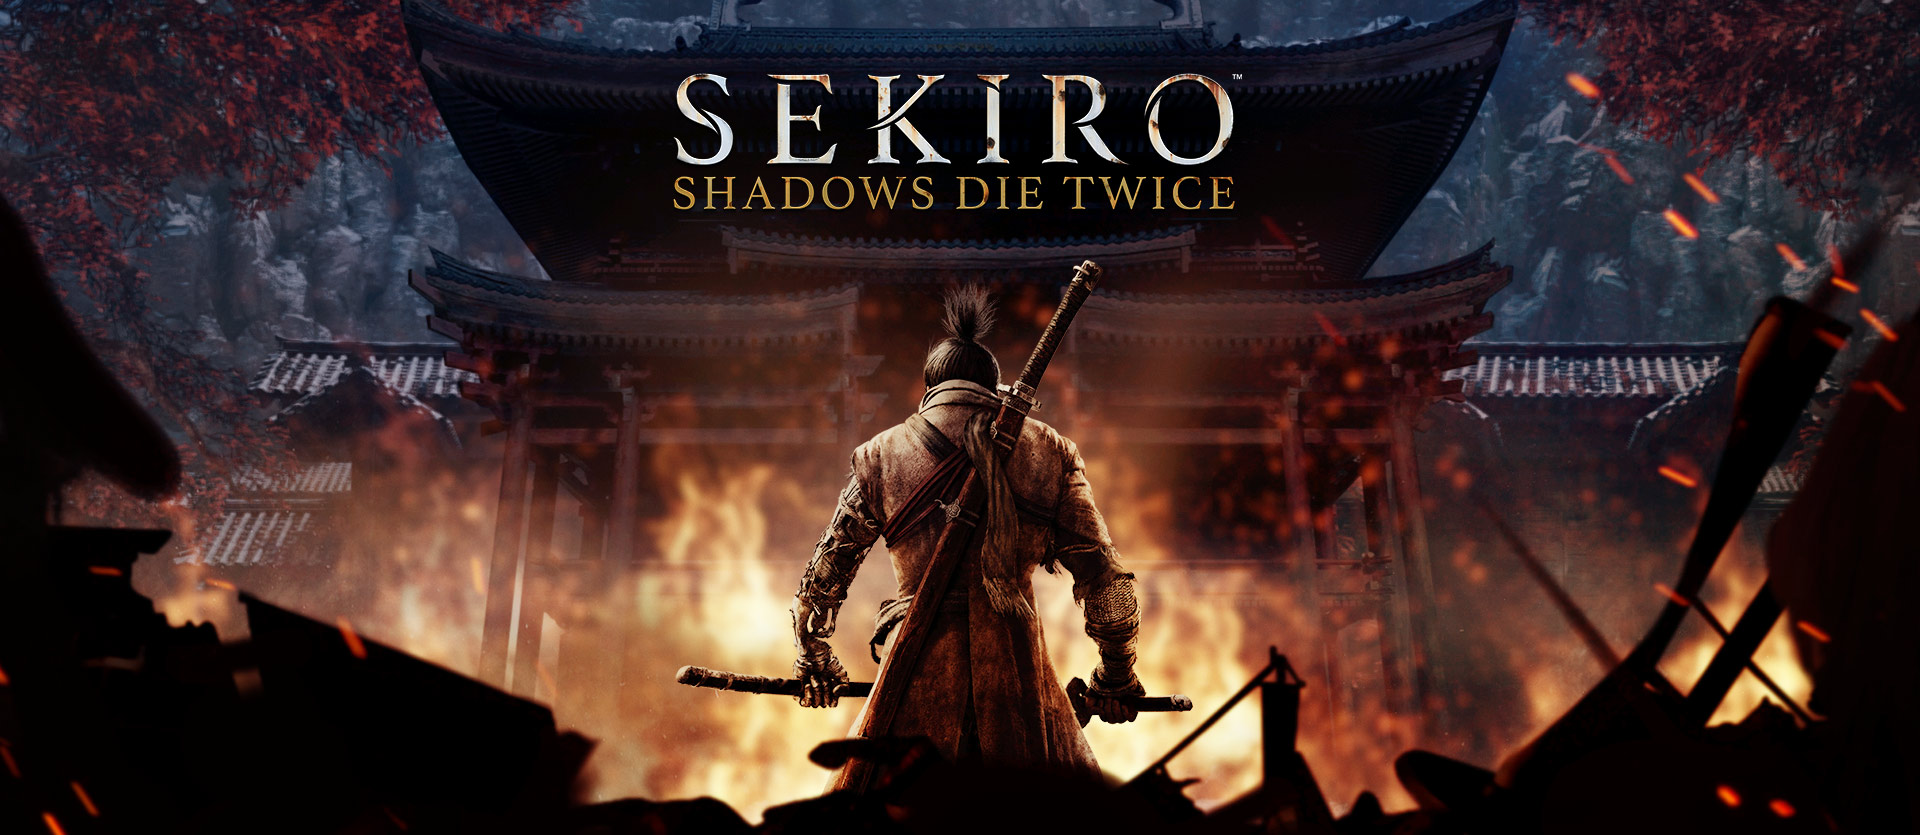 sekiro die twice download